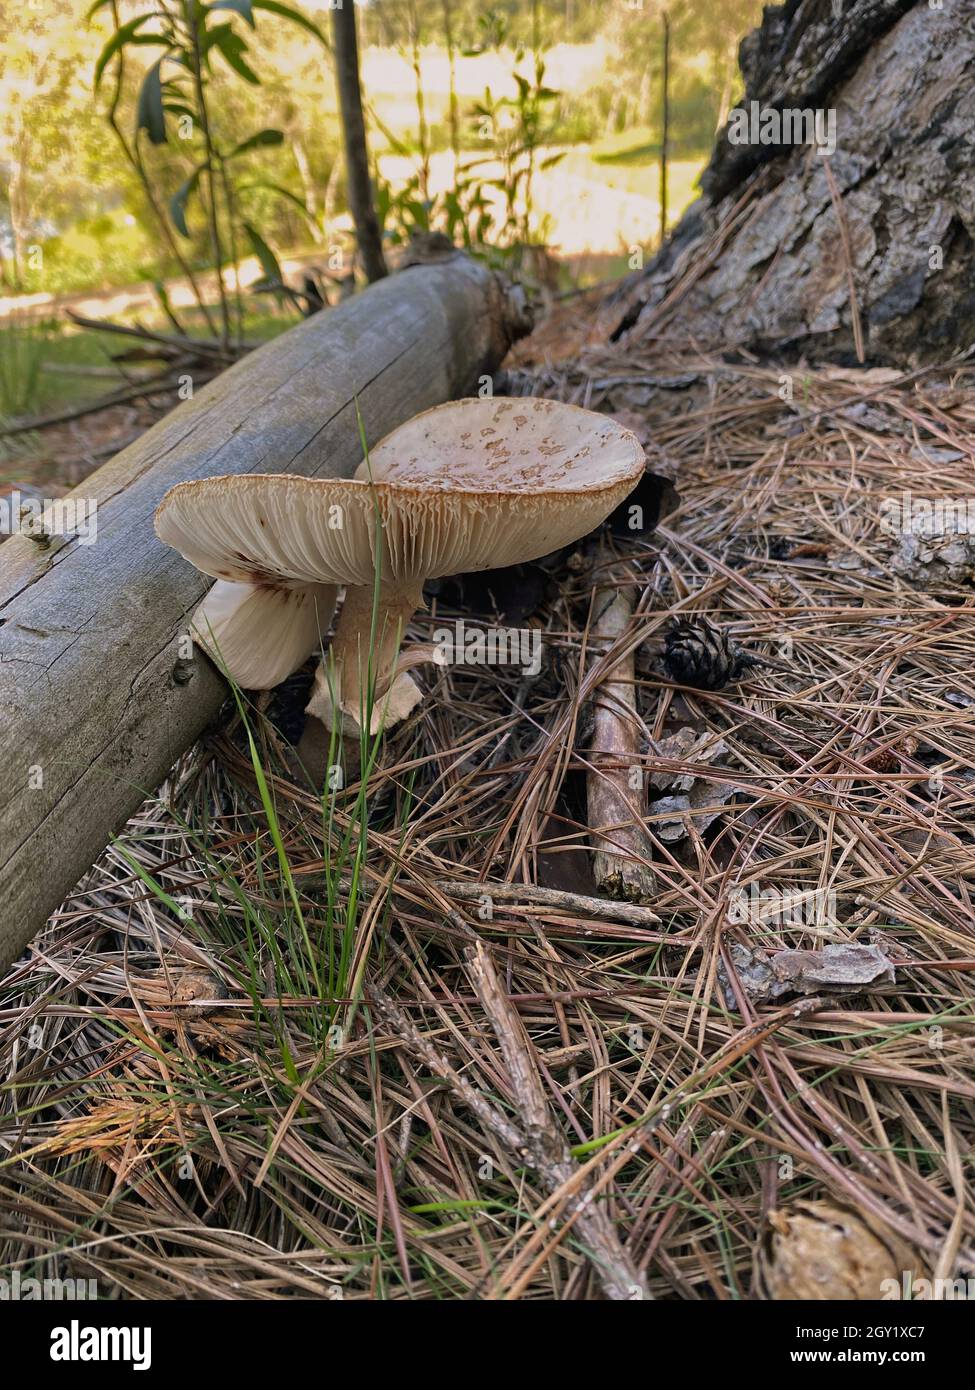 Pilze in natura. Essbare und sogar giftige Pilze haben positive ökologische Funktionen für den Wald und die Umwelt. Stockfoto